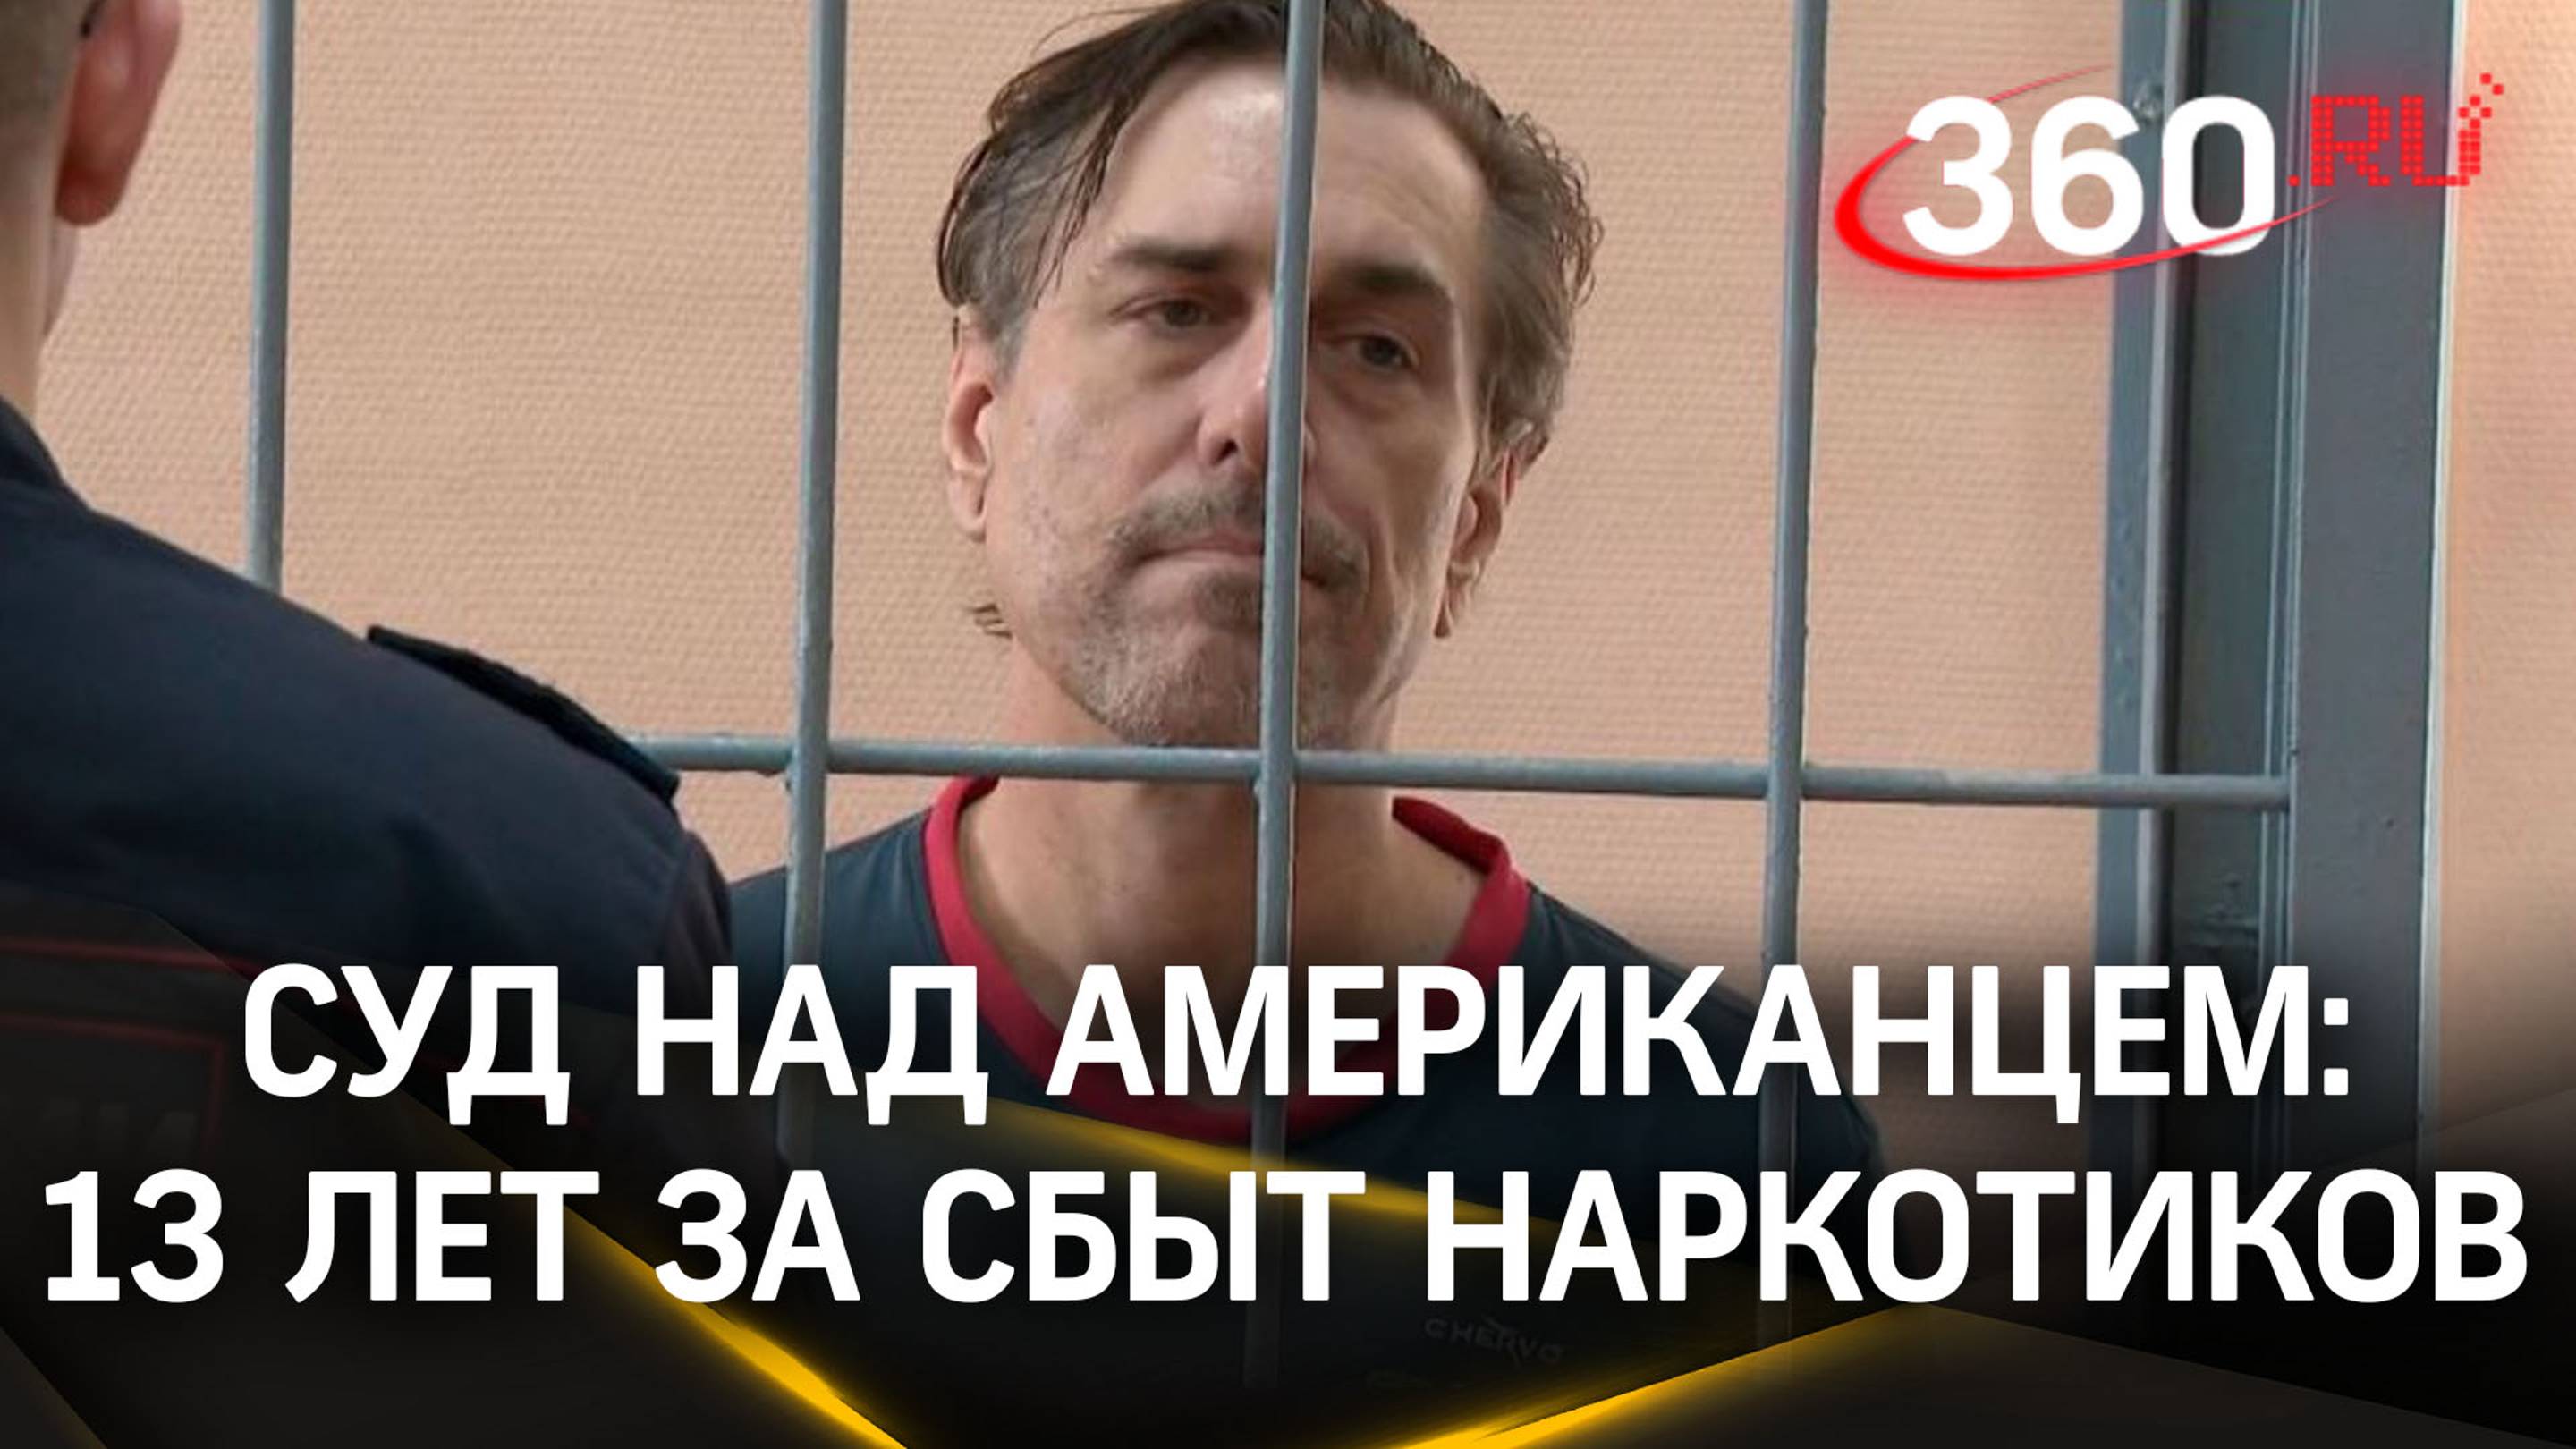 «В чём сила, американец?» Наркодилера из США приговорили в России к 13 годам тюрьмы